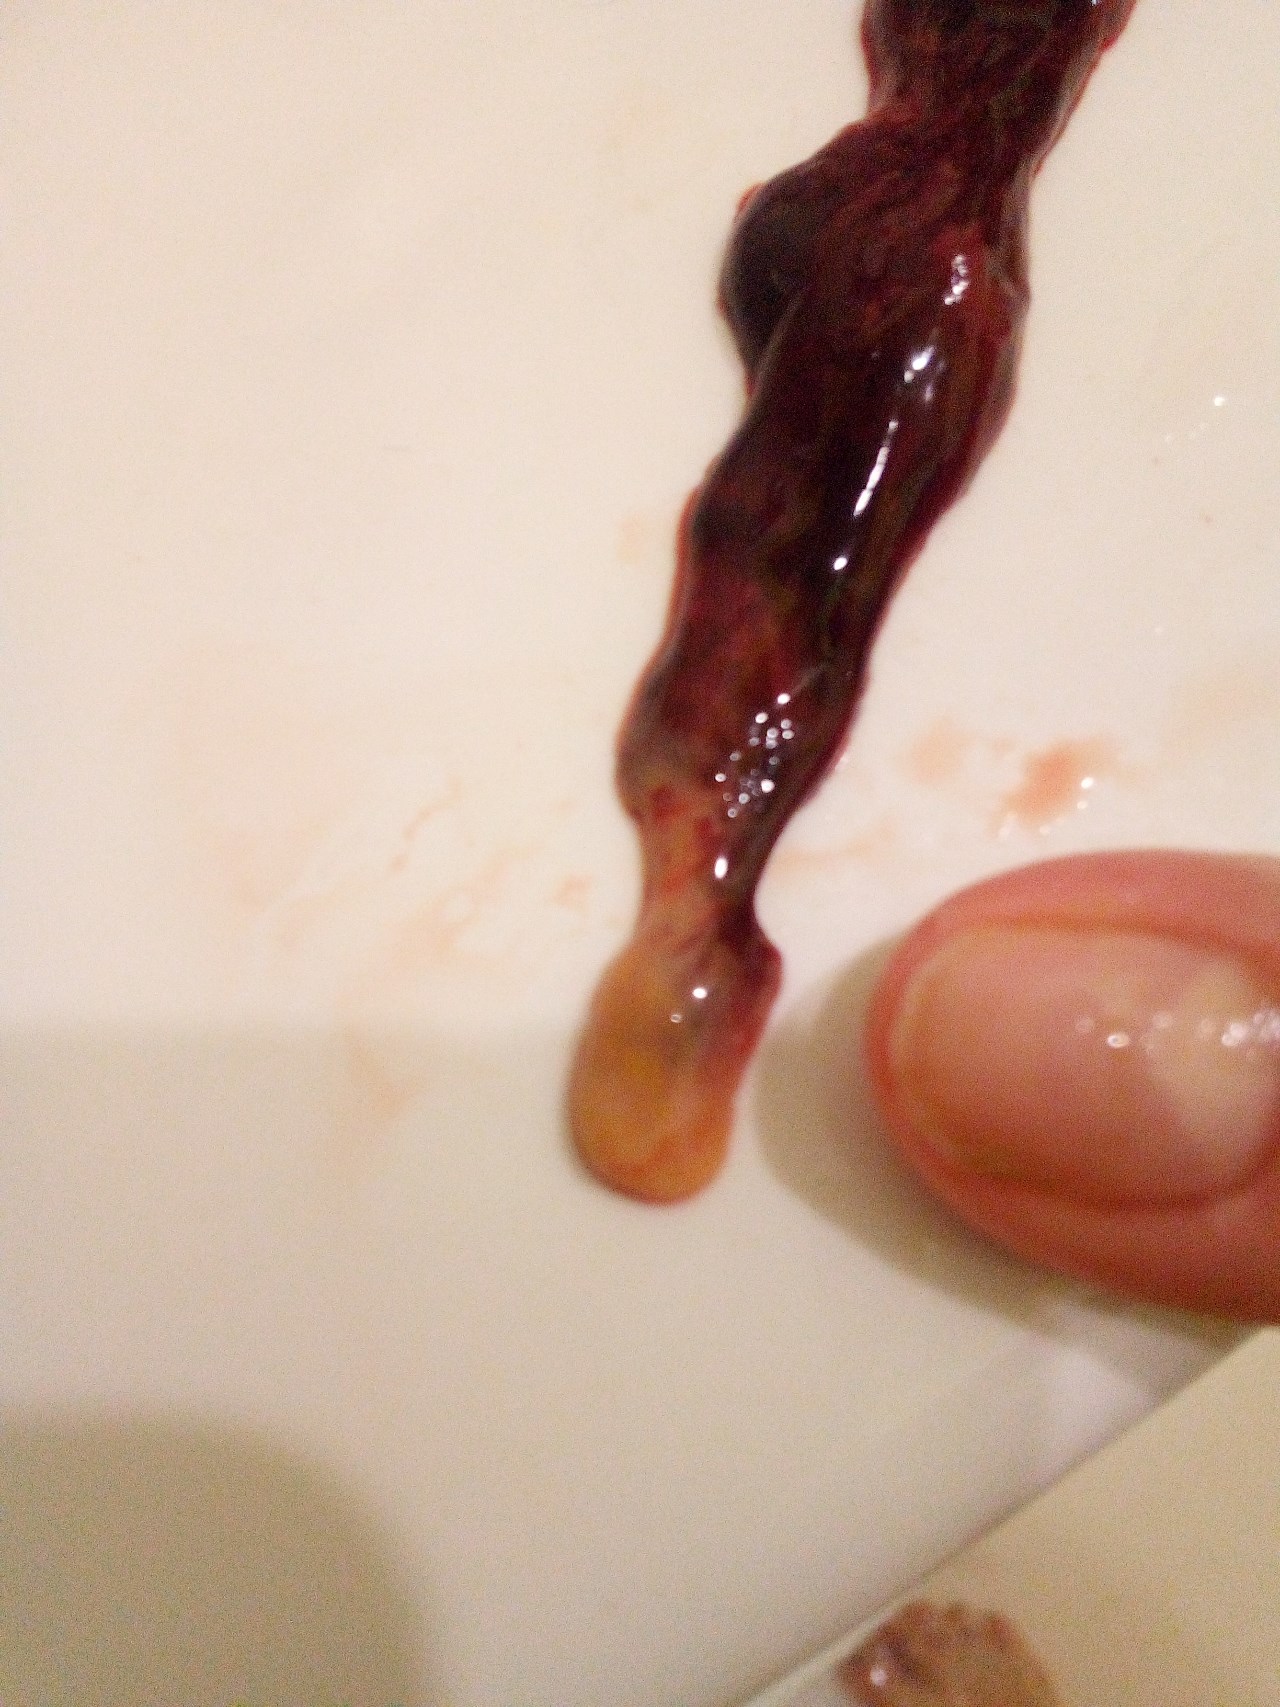 сгустки крови в сперме мужчин фото 67